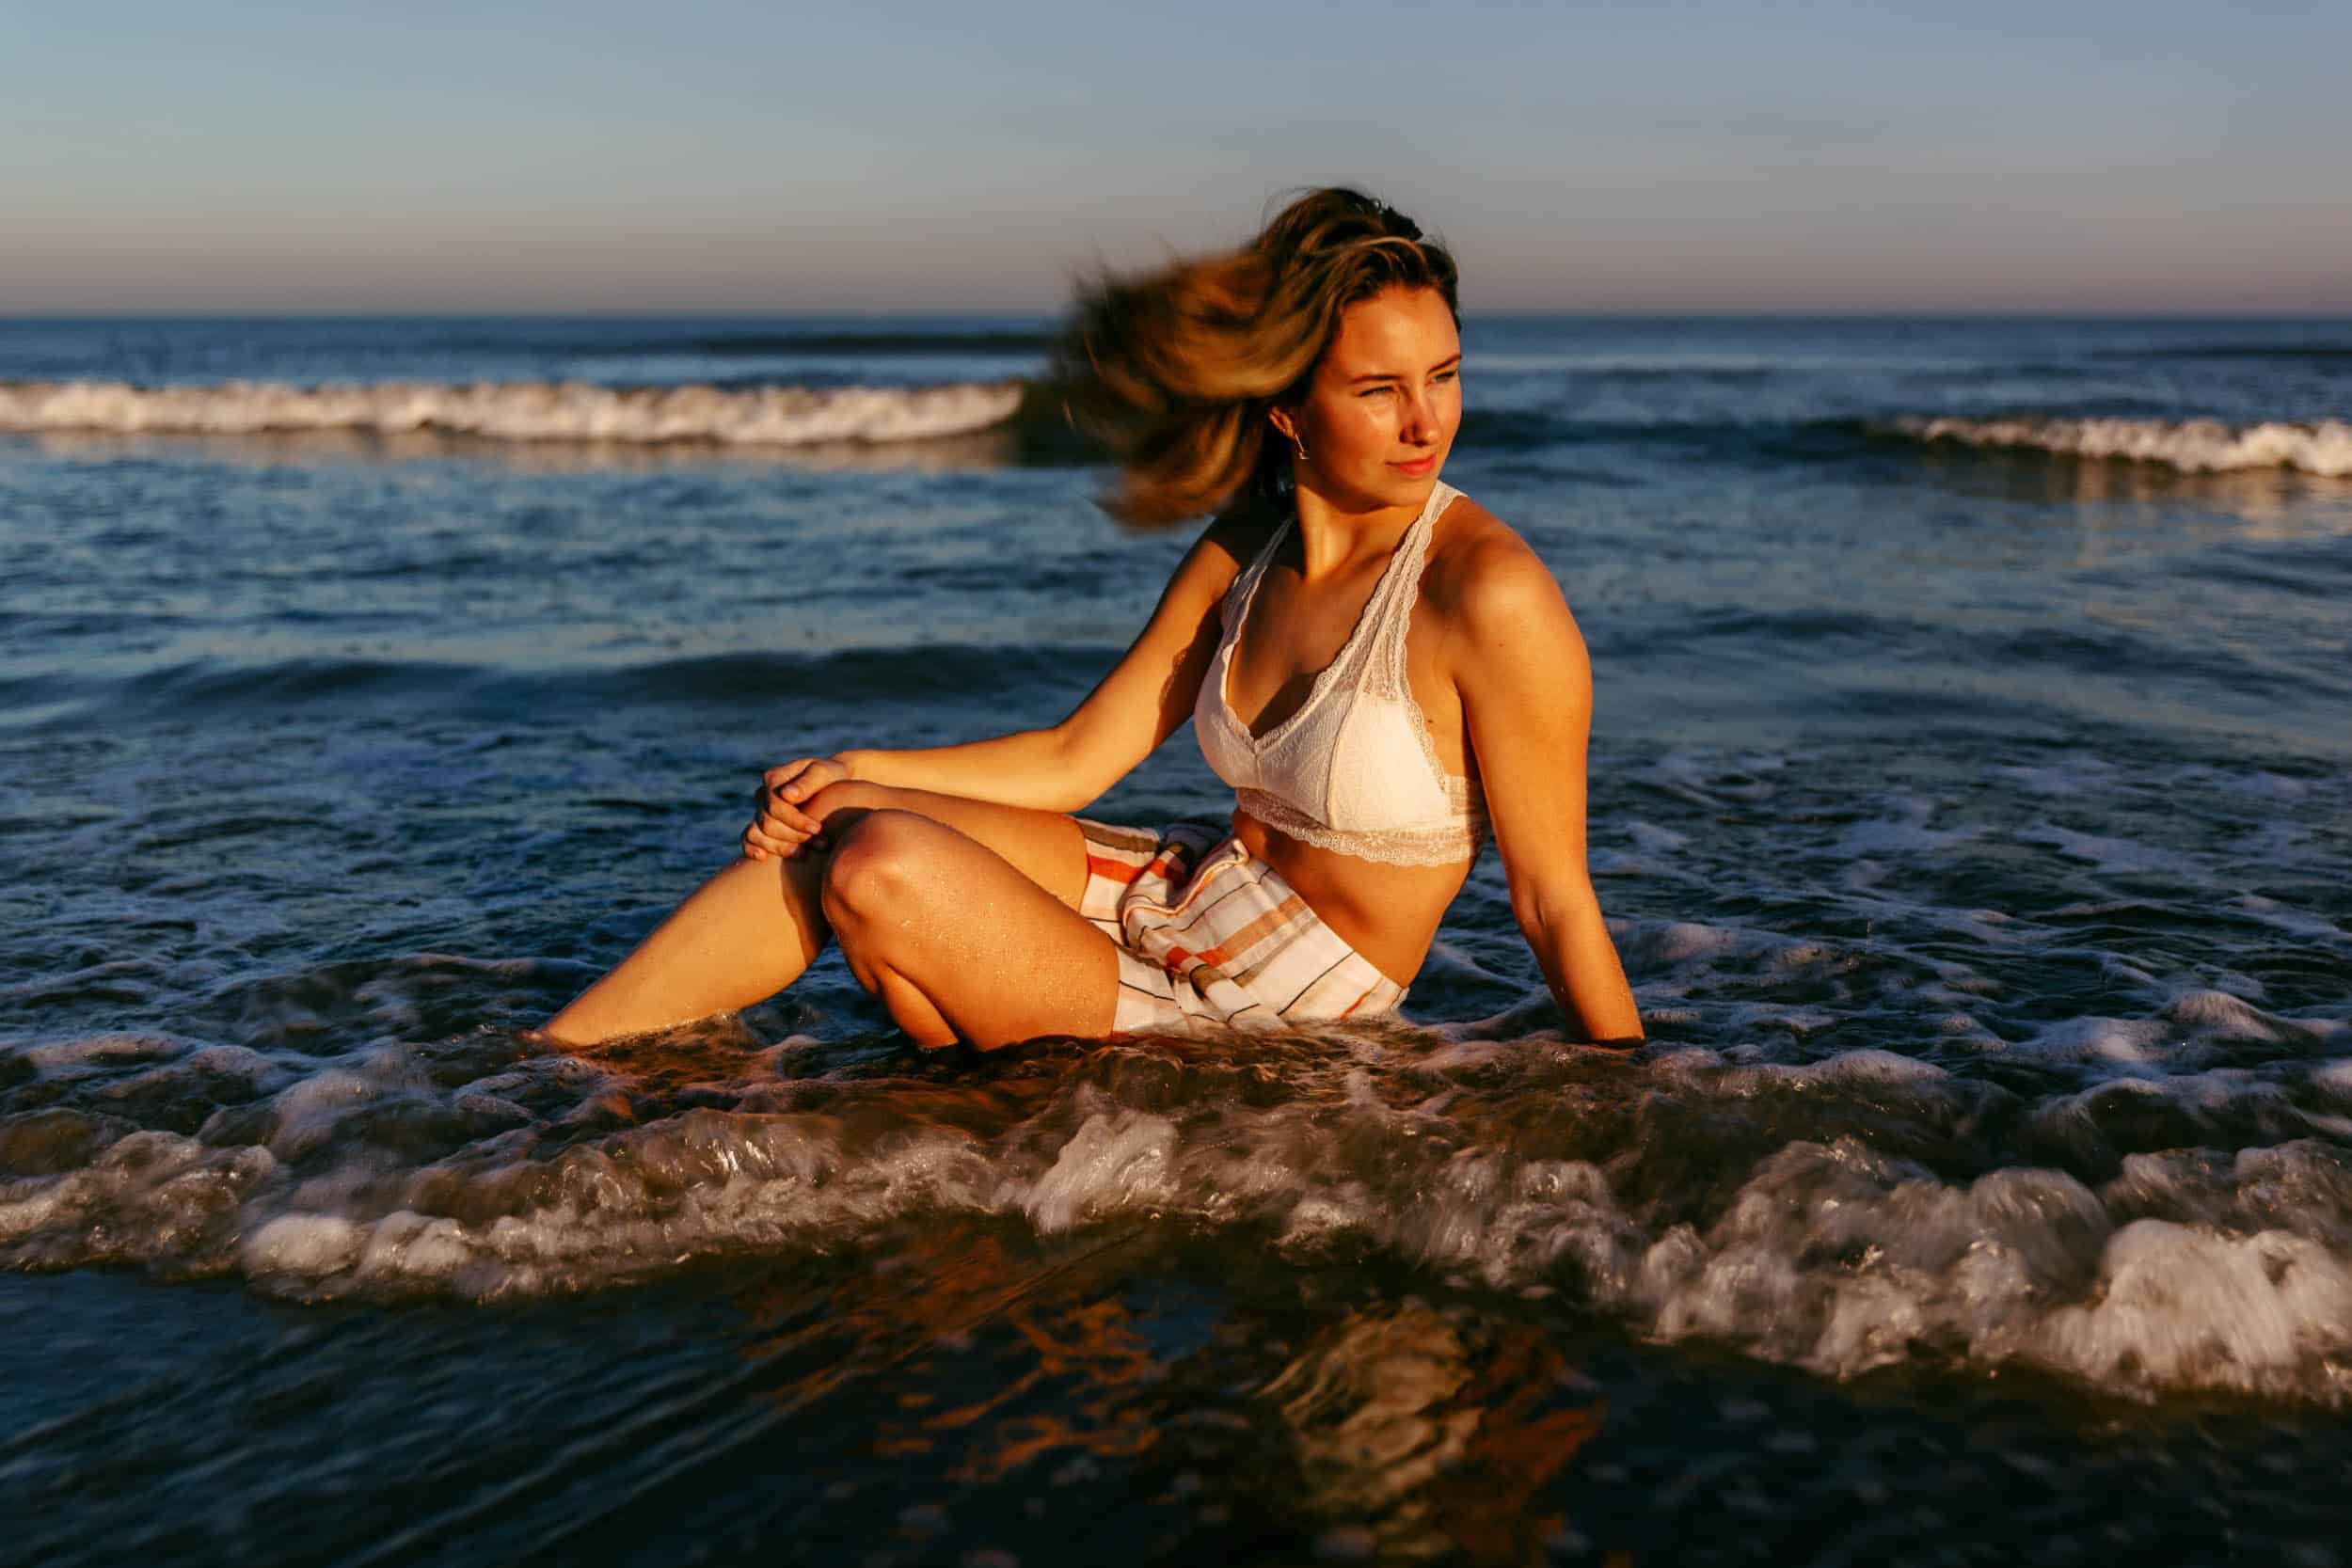 Een vrouw poseert voor een fotoshoot op het strand, omringd door de oceaan.